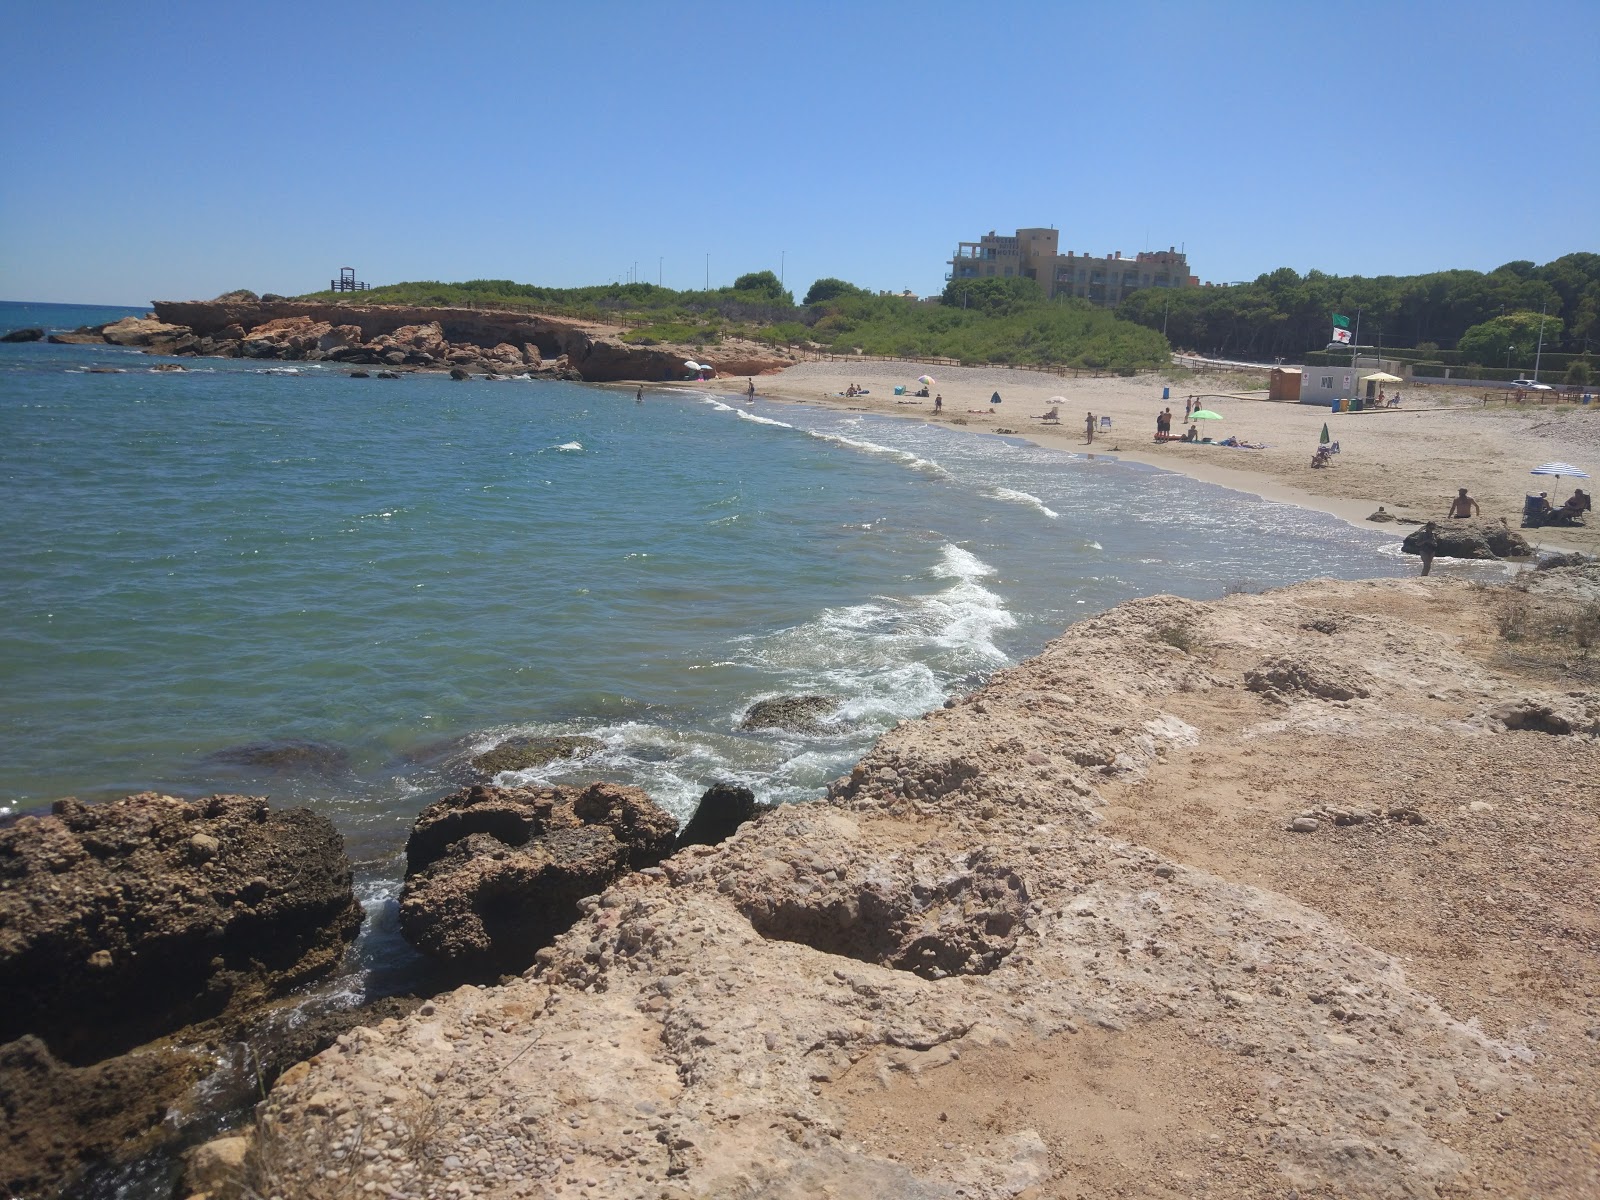 Playa del Moro'in fotoğrafı kahverengi kum yüzey ile